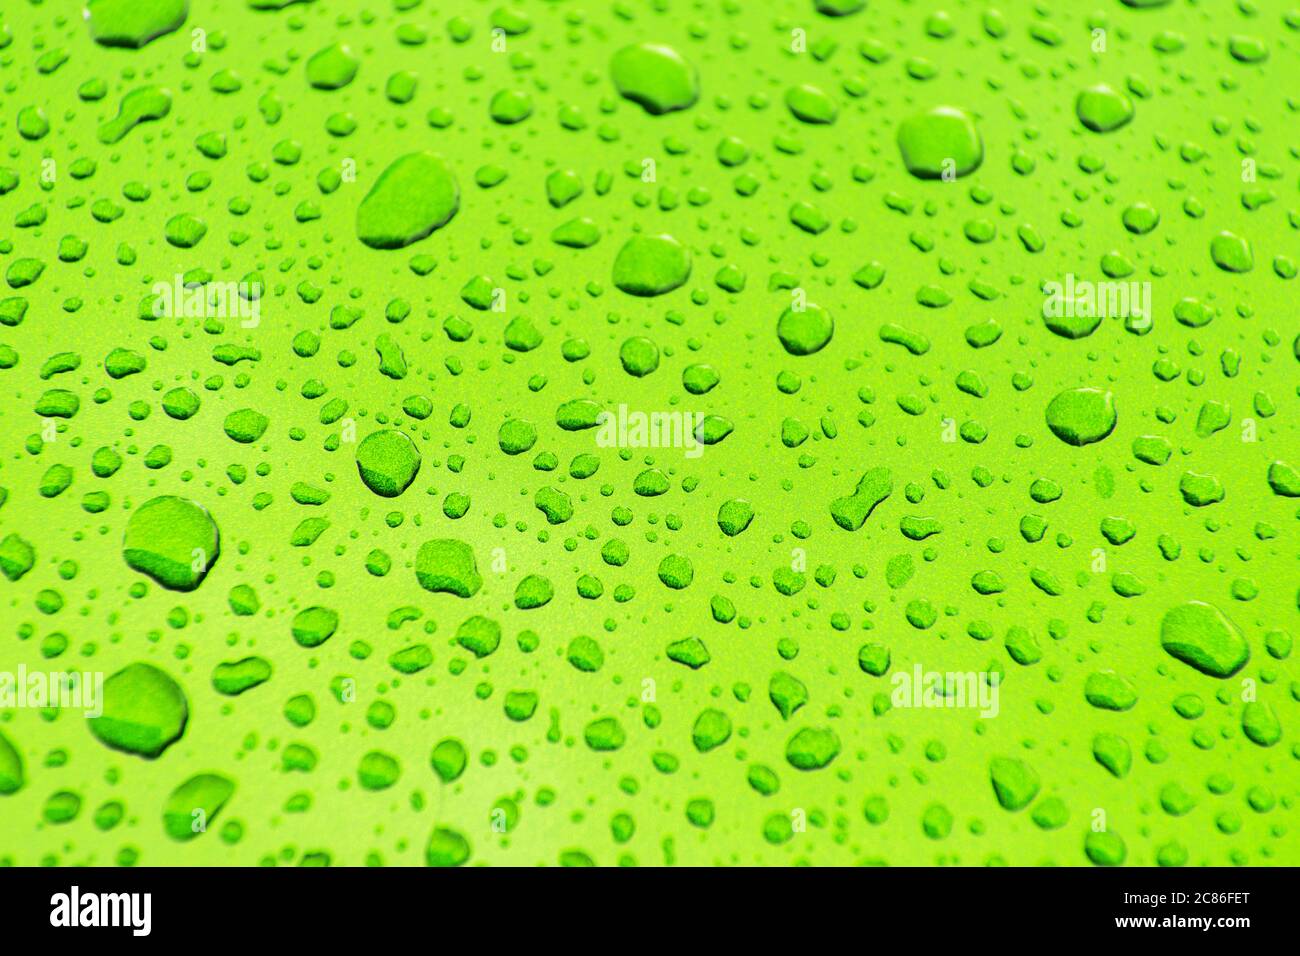 Sauber und hell Grün Auto Karosserie Farbe bedeckt von Auto Waschen Wasser Tropfen Nahaufnahme Hintergrund. Thema Automobilindustrie. Stockfoto